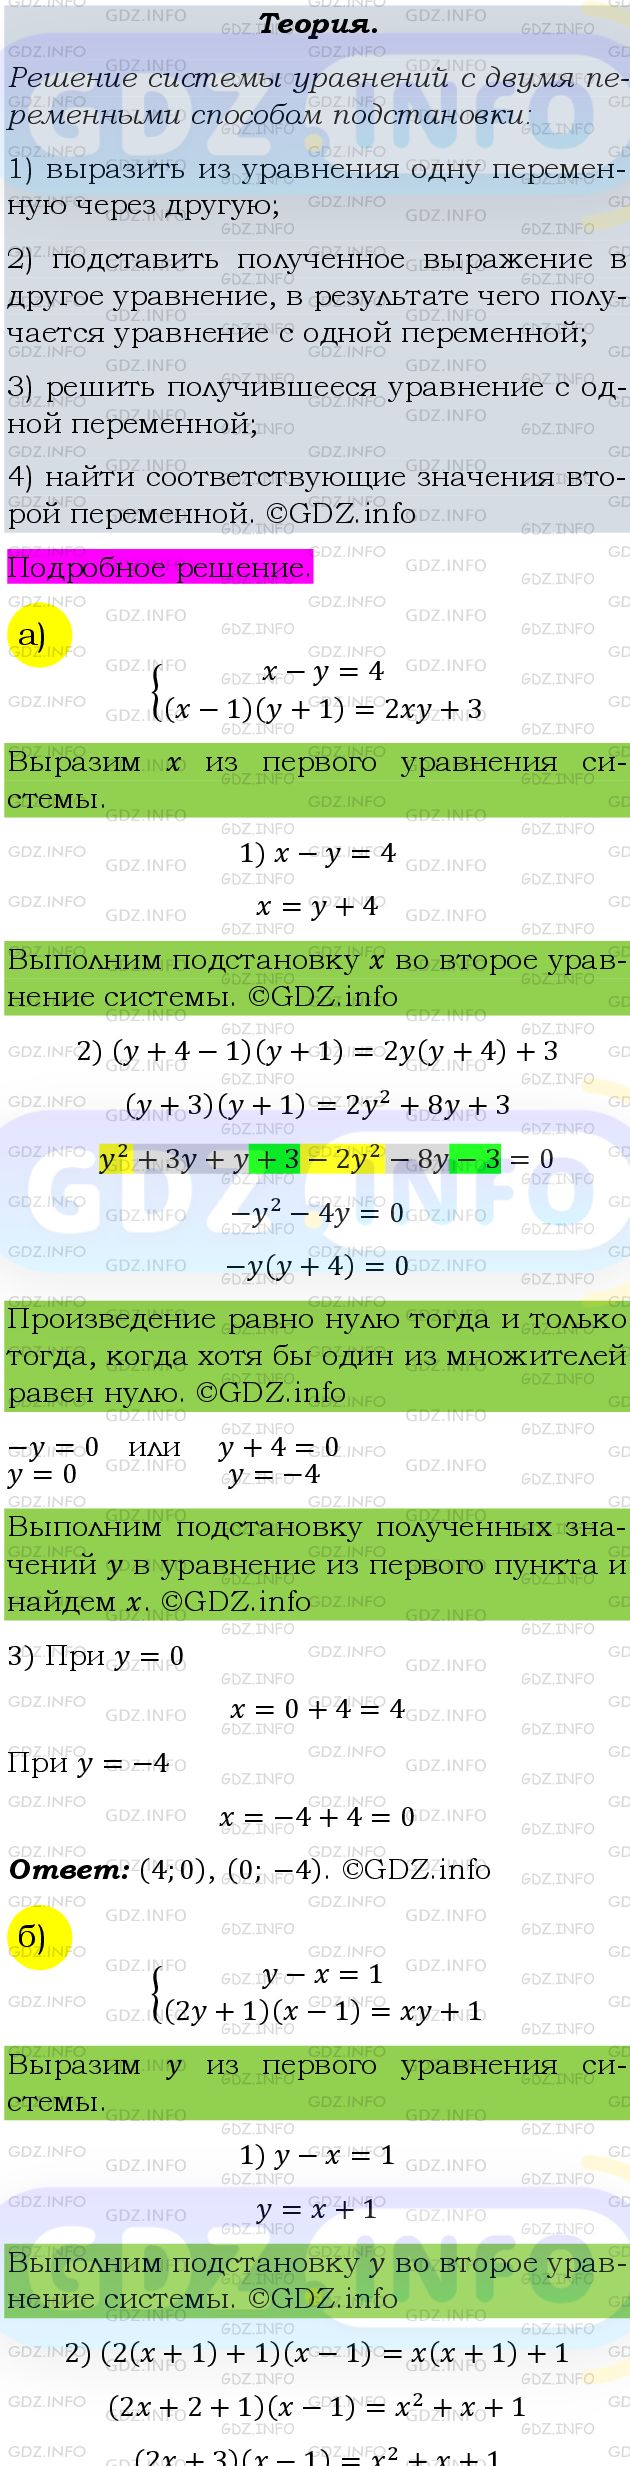 Фото подробного решения: Номер задания №493 из ГДЗ по Алгебре 9 класс: Макарычев Ю.Н.